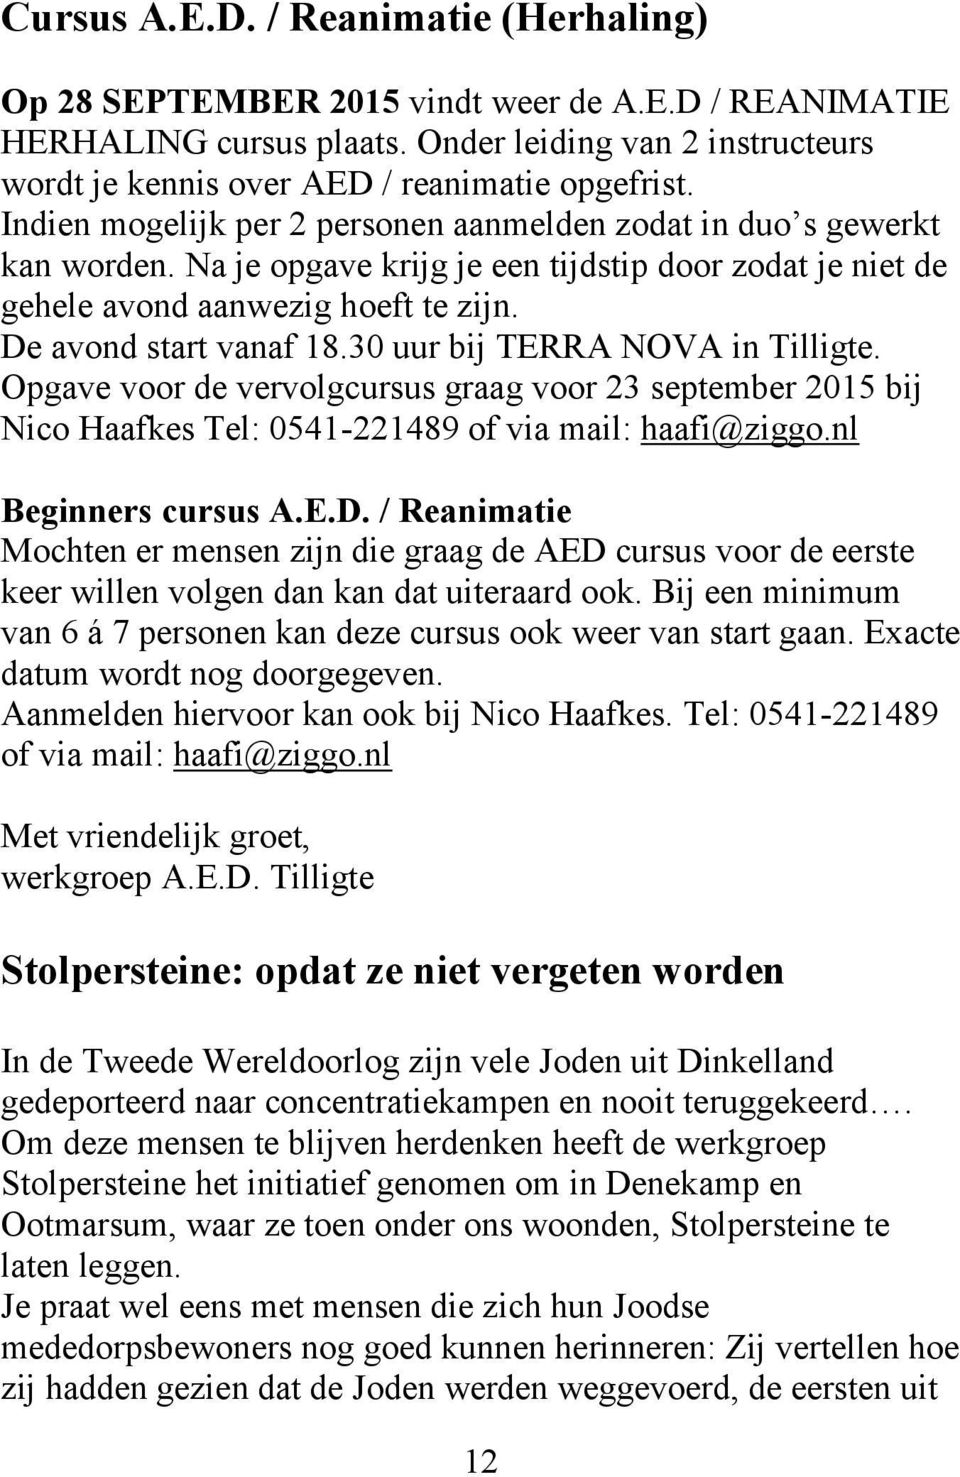 30 uur bij TERRA NOVA in Tilligte. Opgave voor de vervolgcursus graag voor 23 september 2015 bij Nico Haafkes Tel: 0541-221489 of via mail: haafi@ziggo.nl Beginners cursus A.E.D.